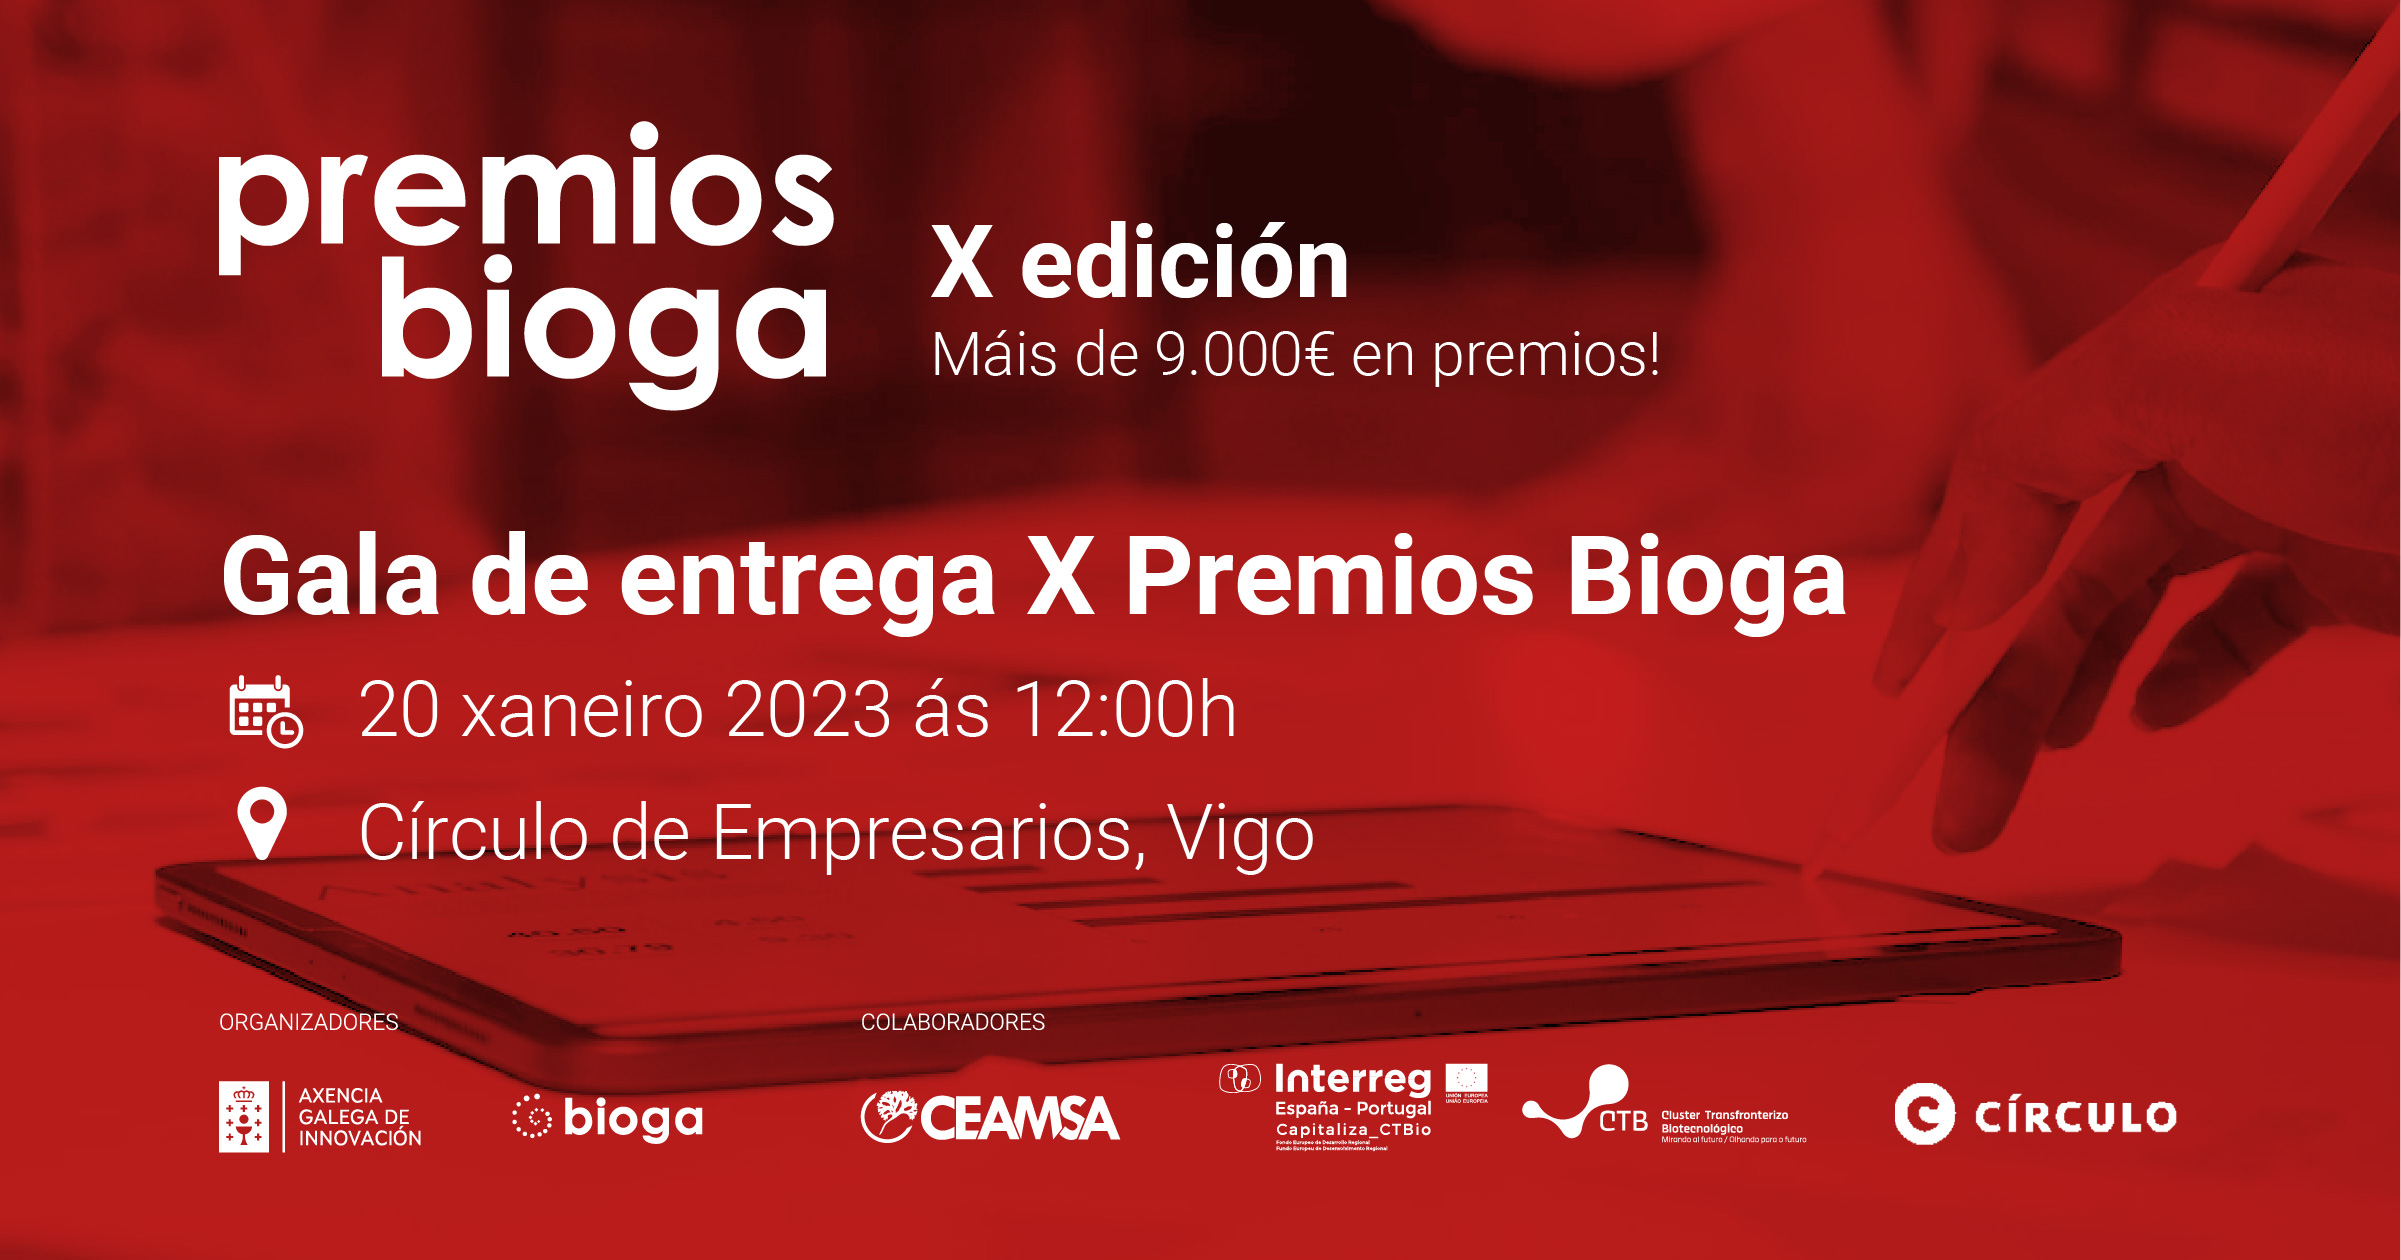 Premios Bioga X Edicion